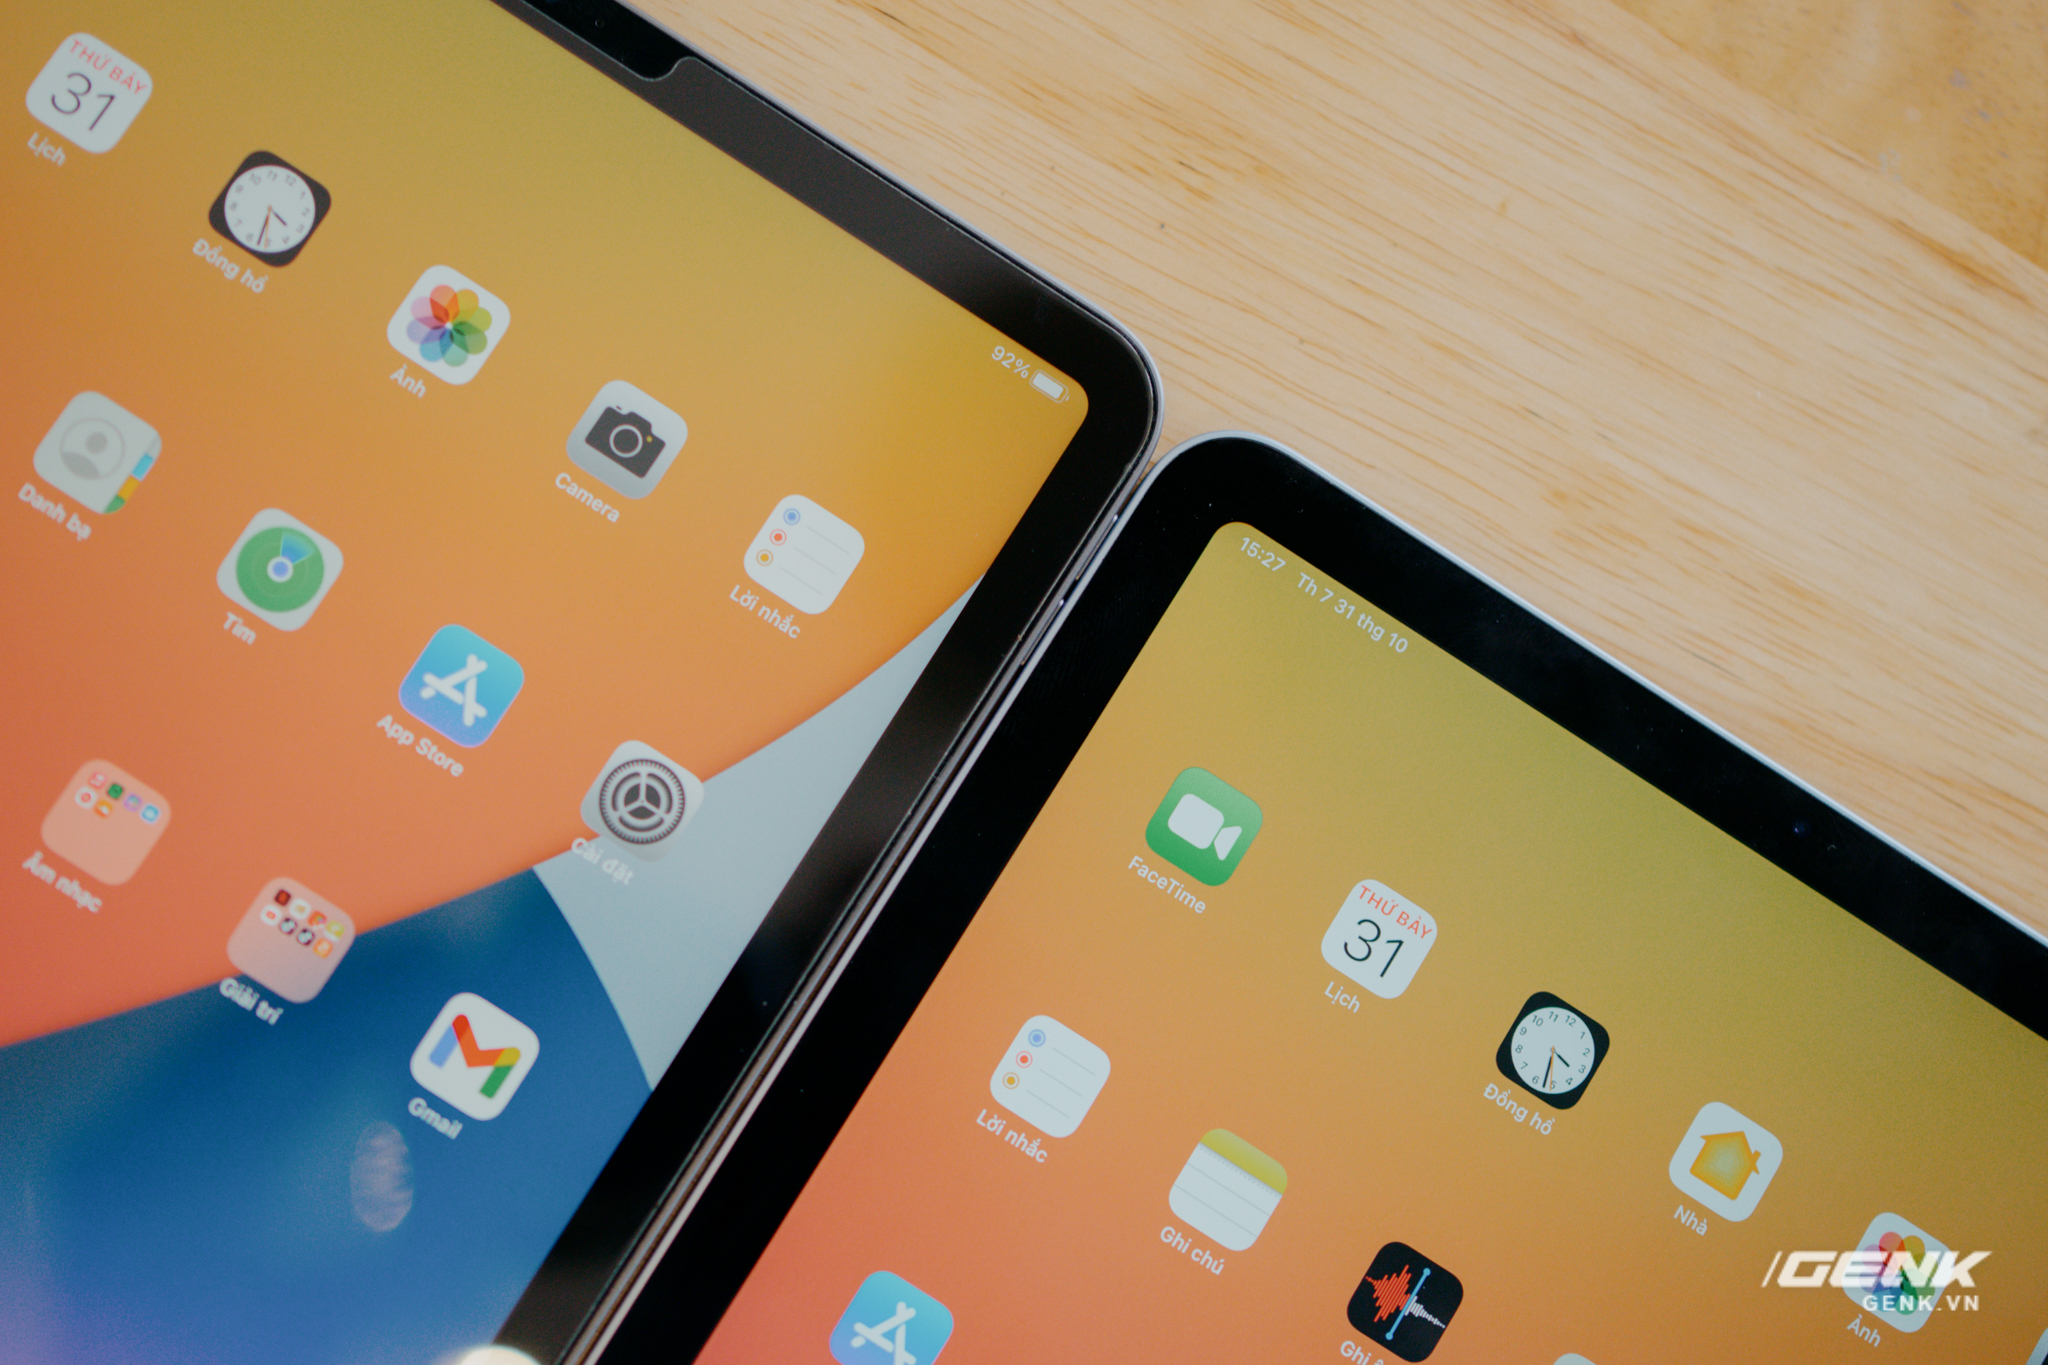 Đánh giá iPad Air 4: Tốt, nhưng chưa nên mua ngay - Ảnh 3.